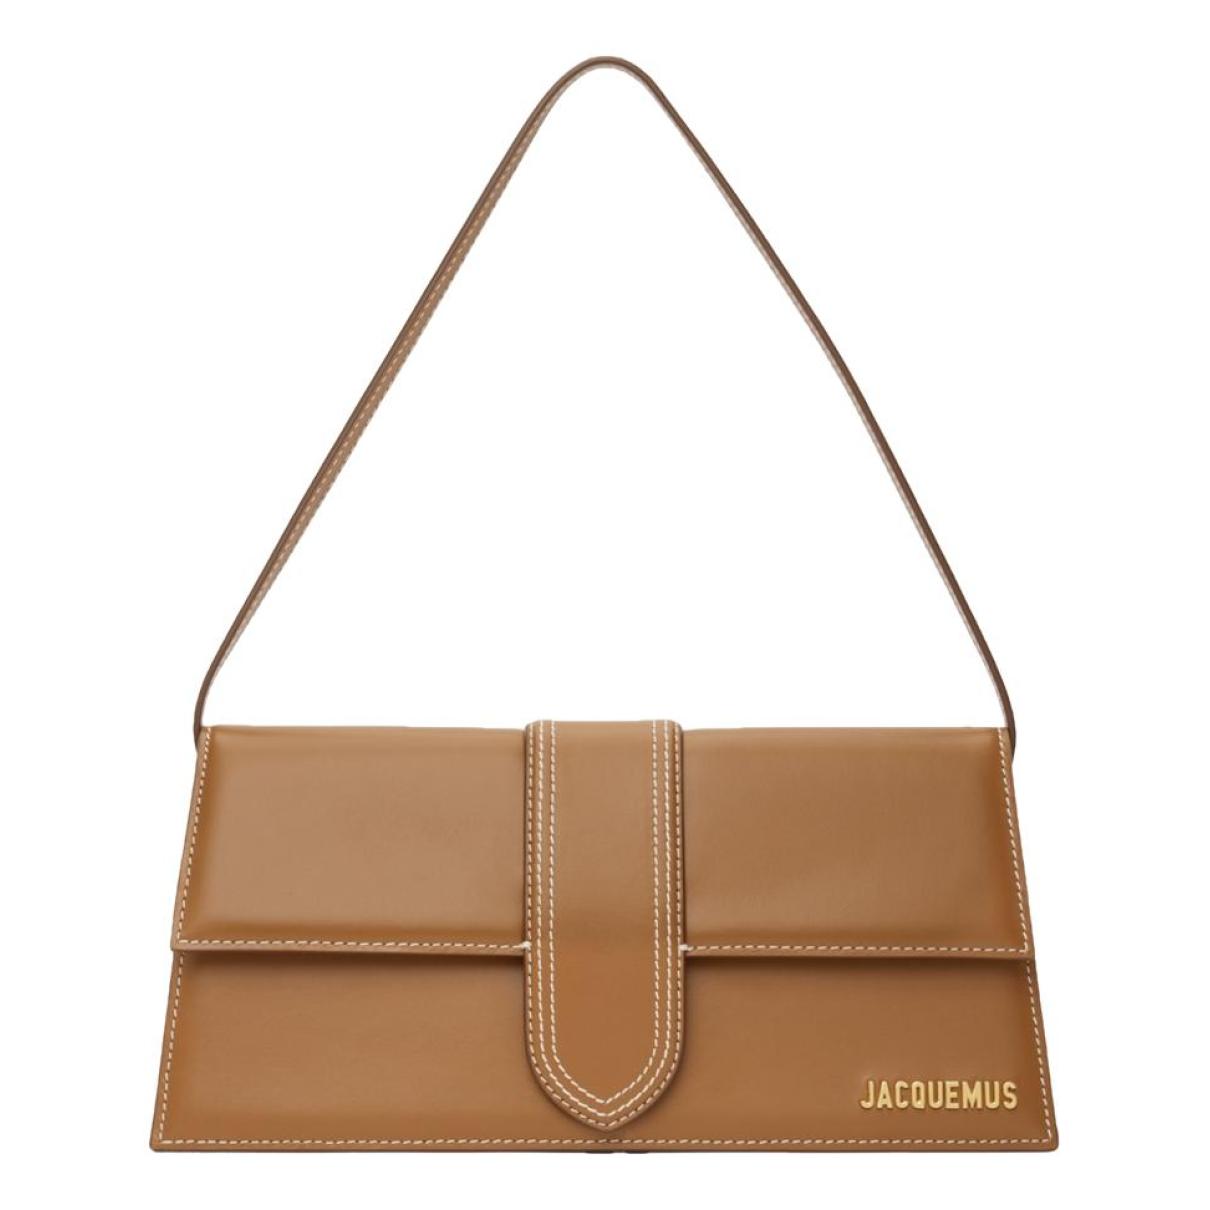 Le Bambino leather handbag - 1